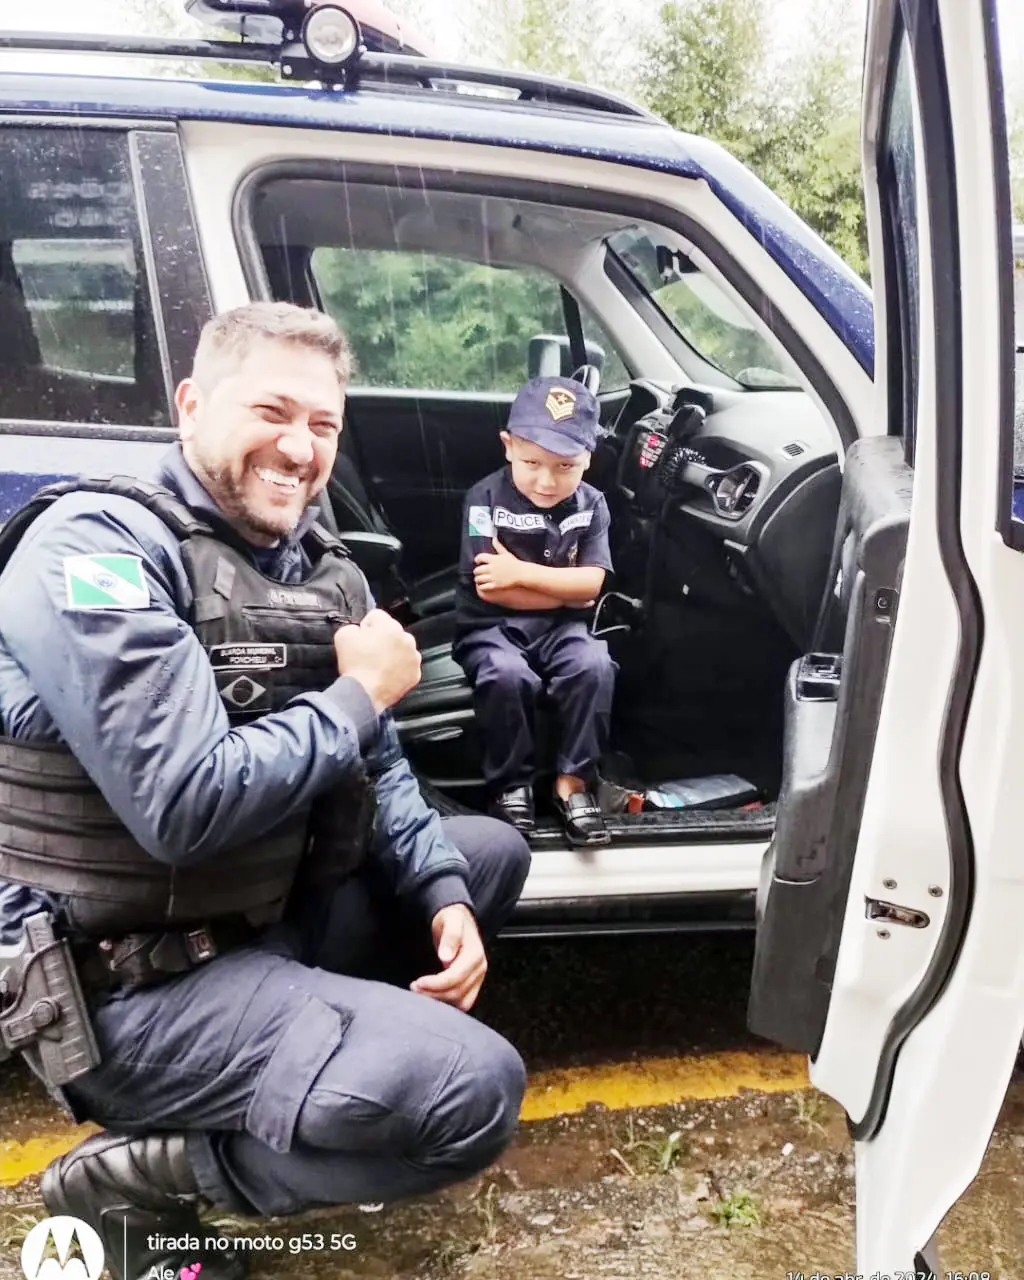 Imagem de destaque - Guardas municipais surpreendem garotinho de 3 anos em festa de aniversário